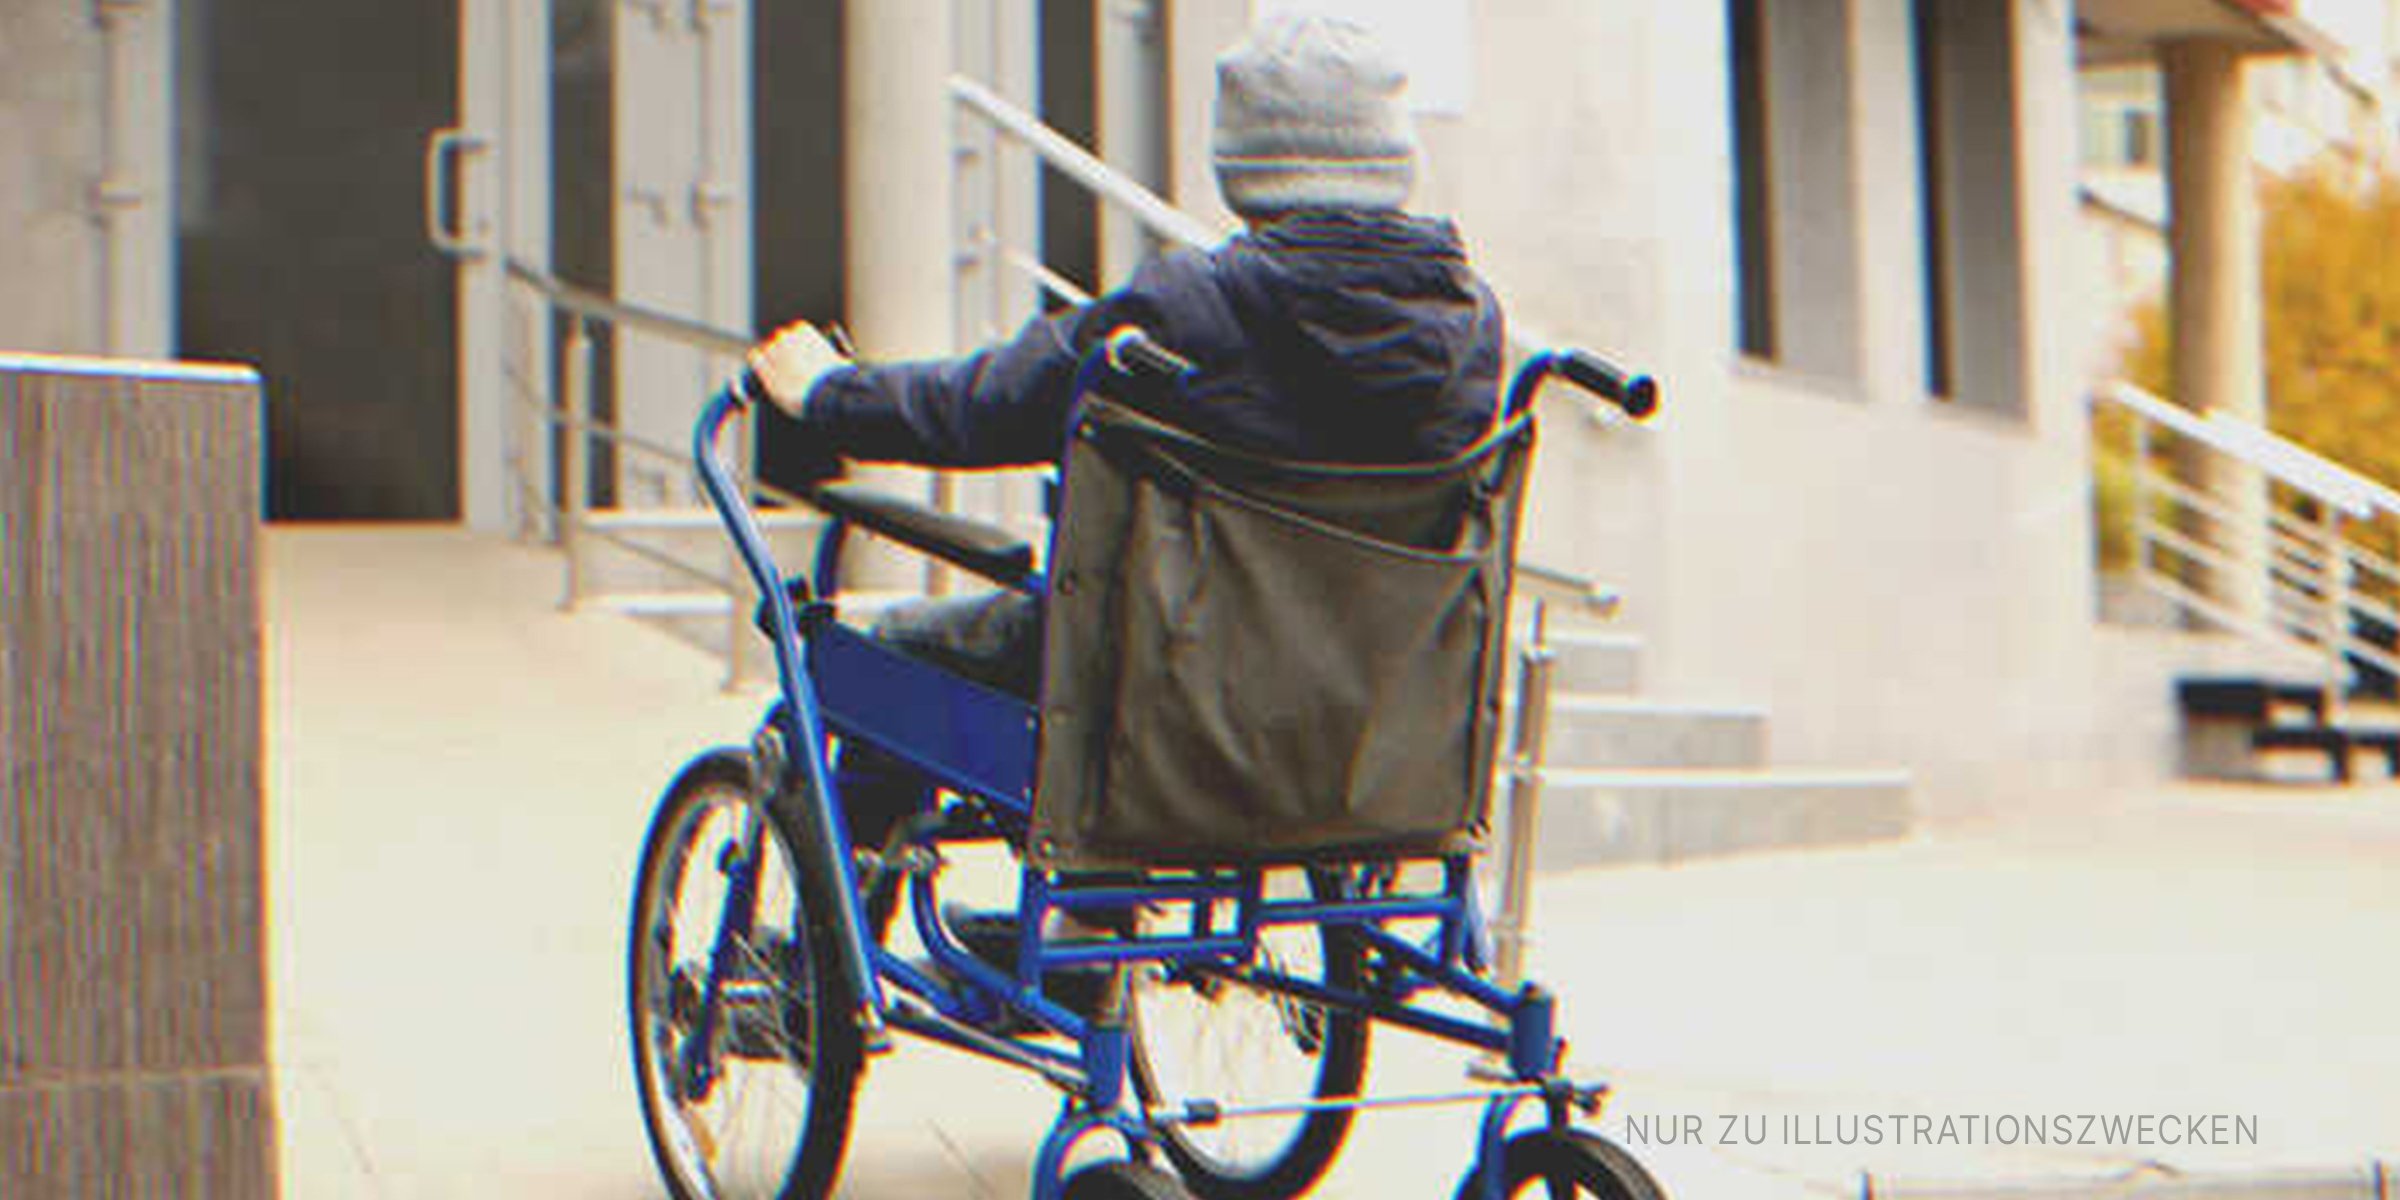 Junge im Rollstuhl außerhalb eines Gebäudes | Quelle: Shutterstock